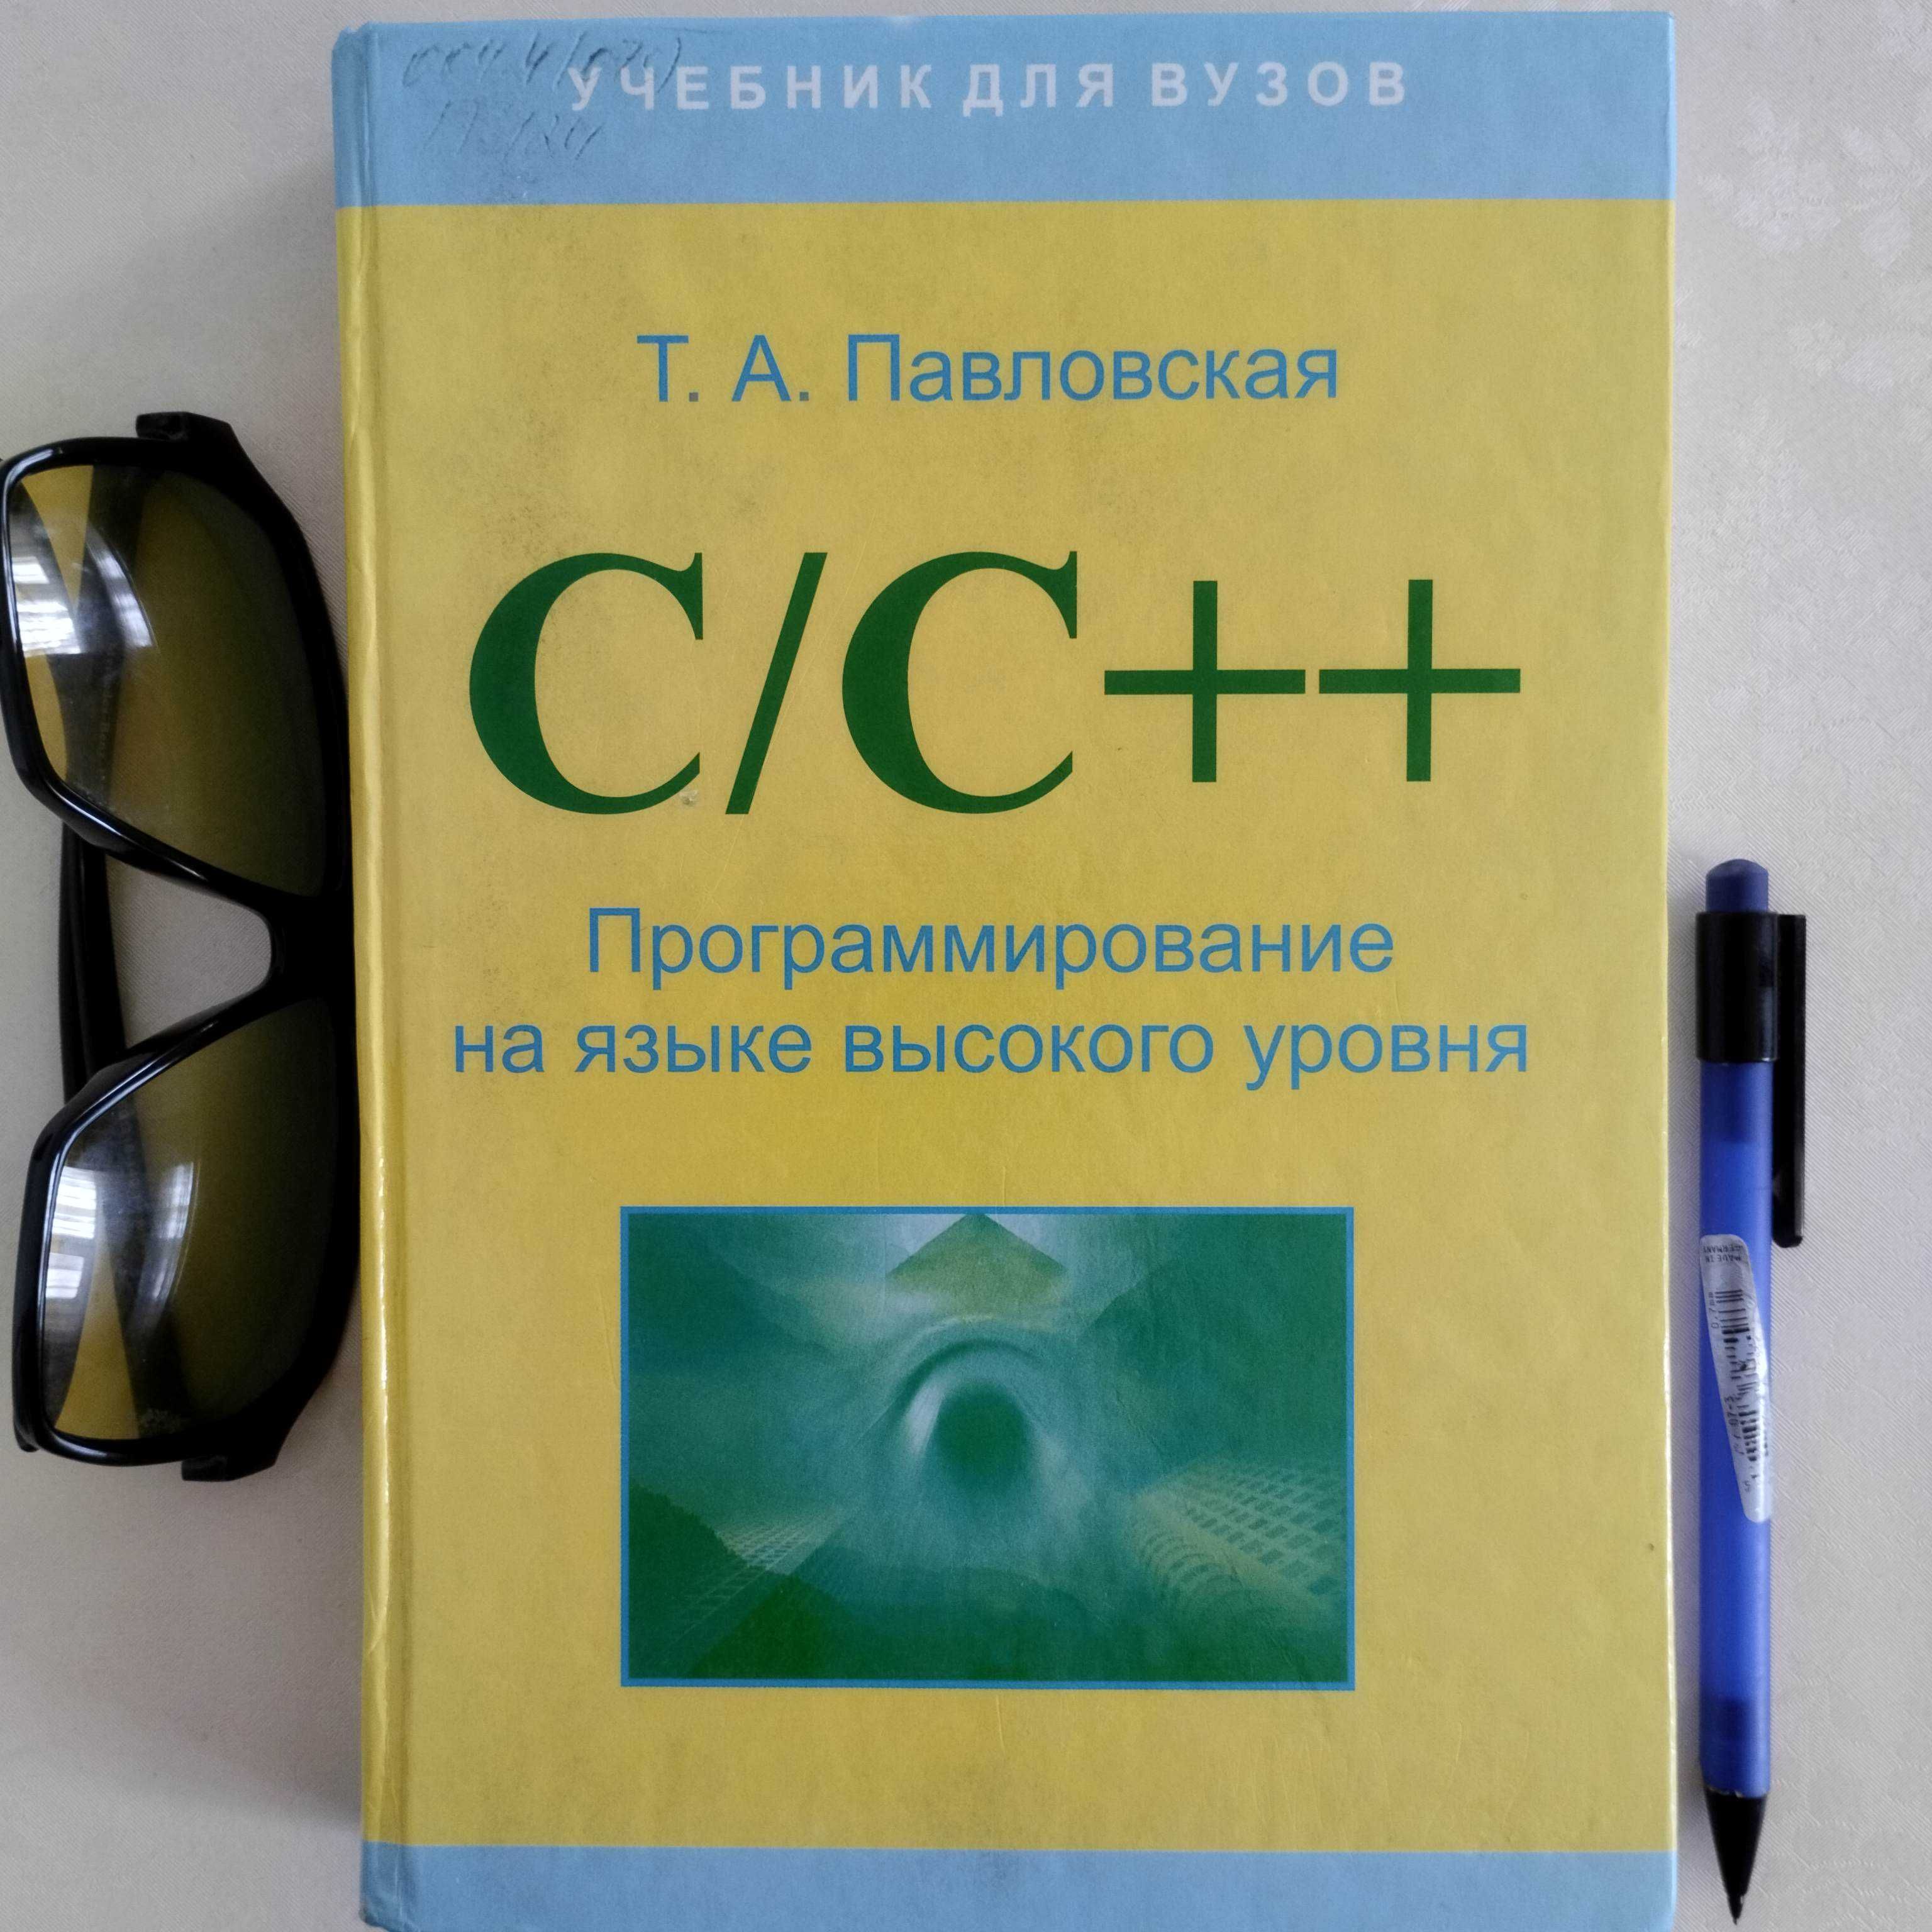 C++ учебник для начинающих продается. Павловская Т.А.